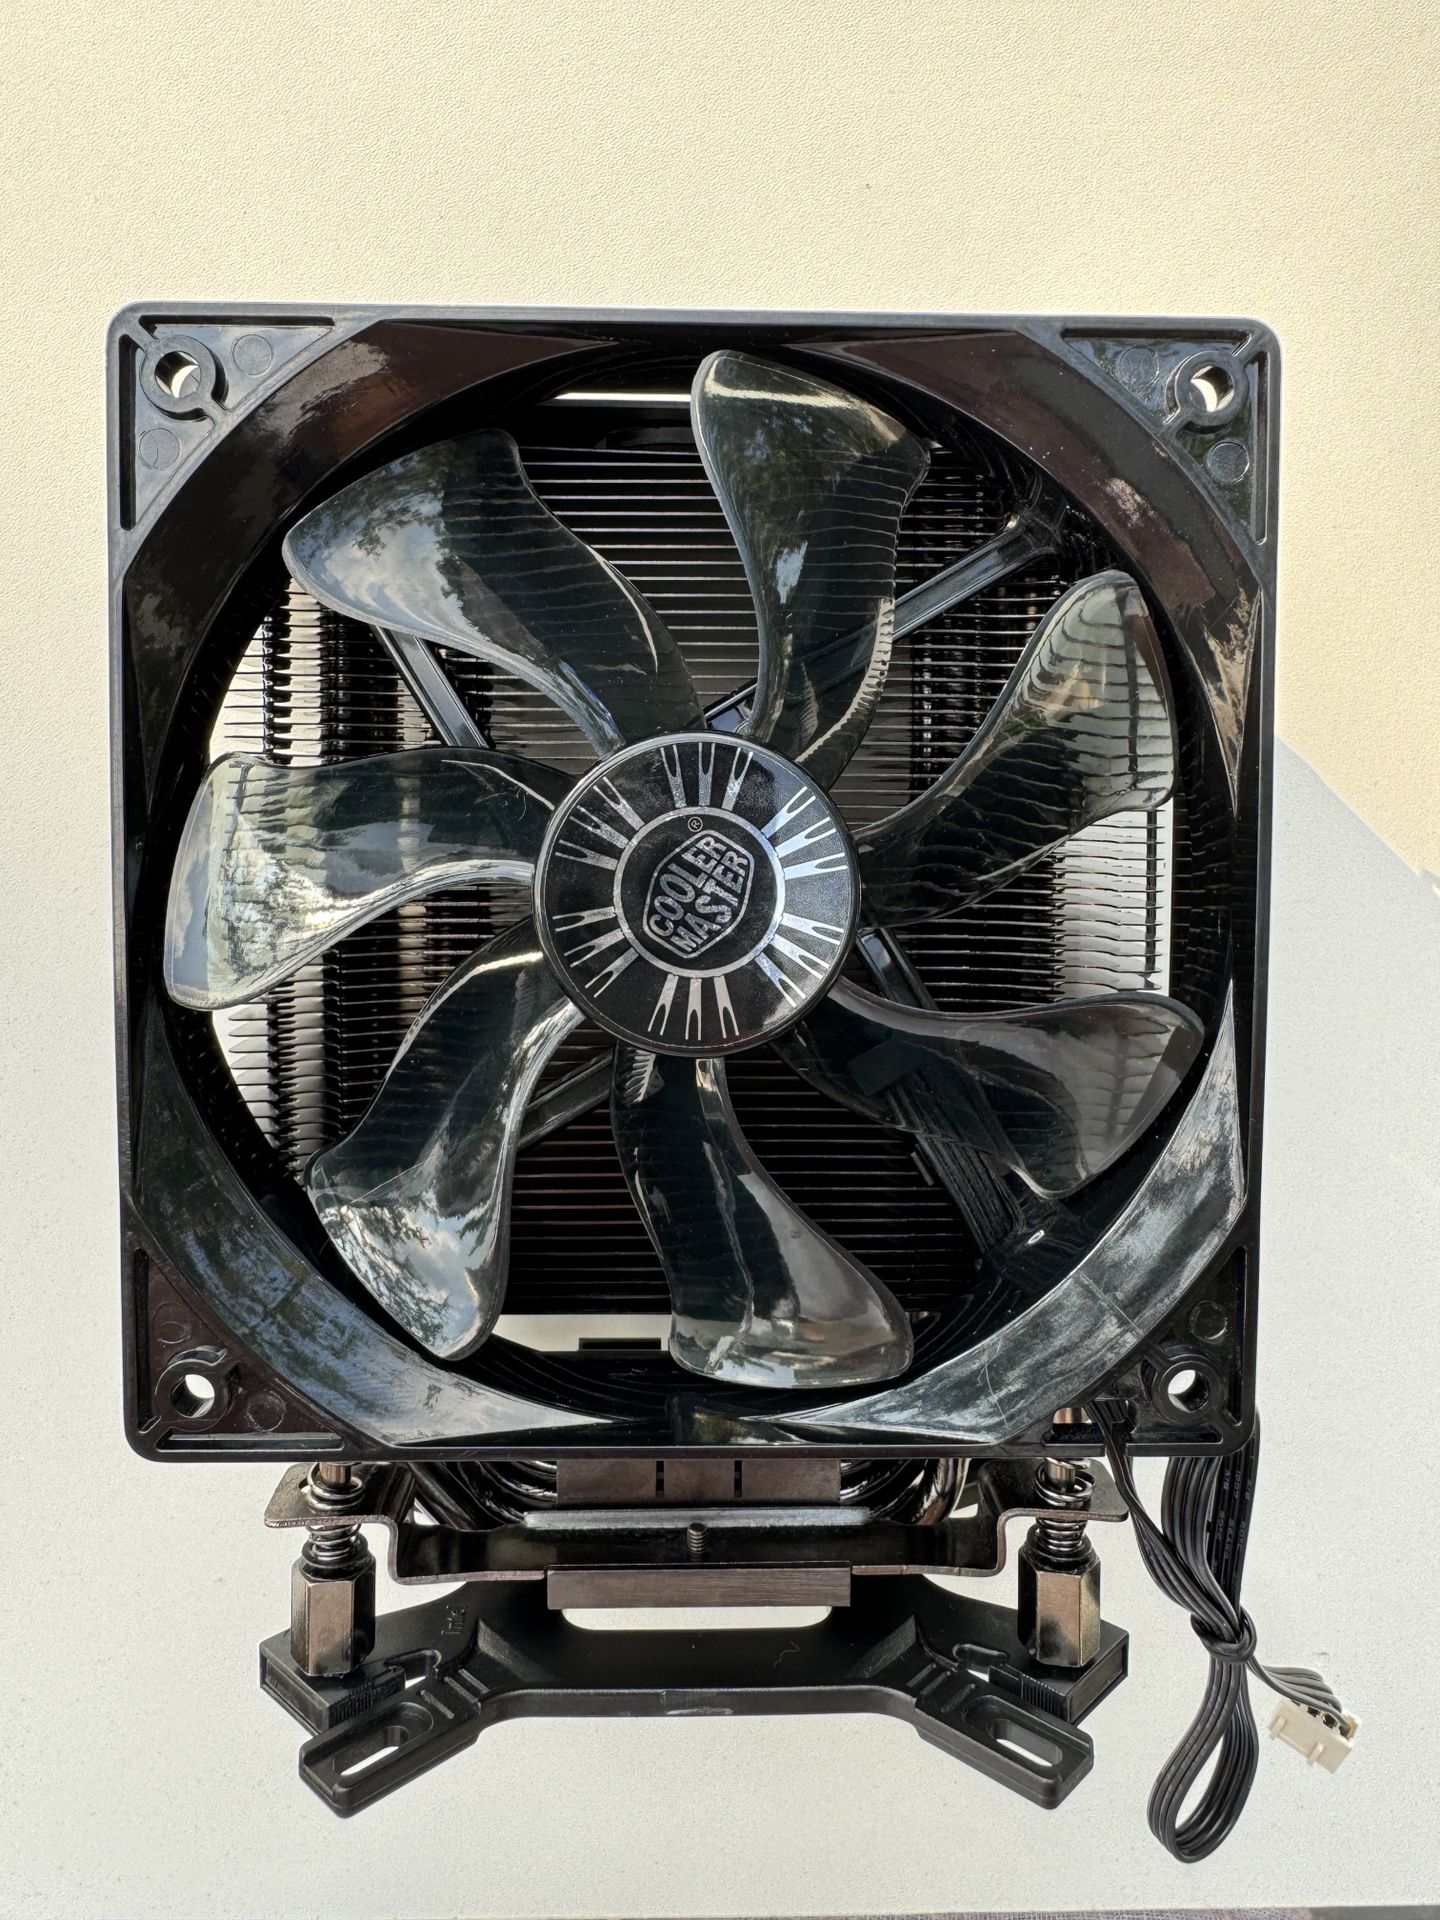 Cooler Master Hyper 212 CPU Air Cooler for AMD5/AMD4.